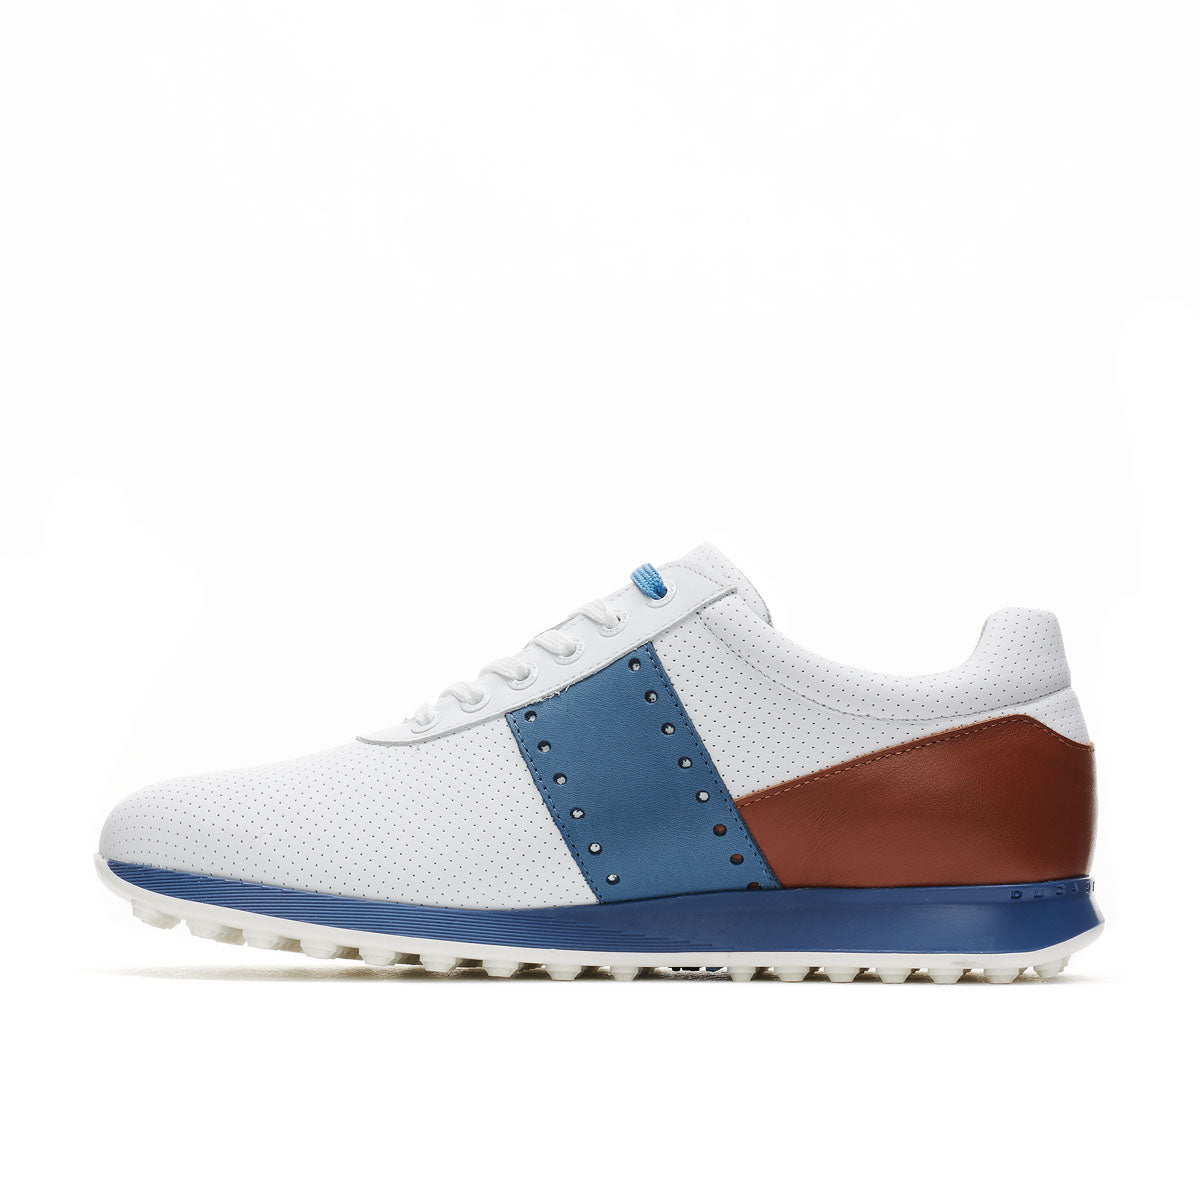 Belair White/Cognac Men's Golf Shoes